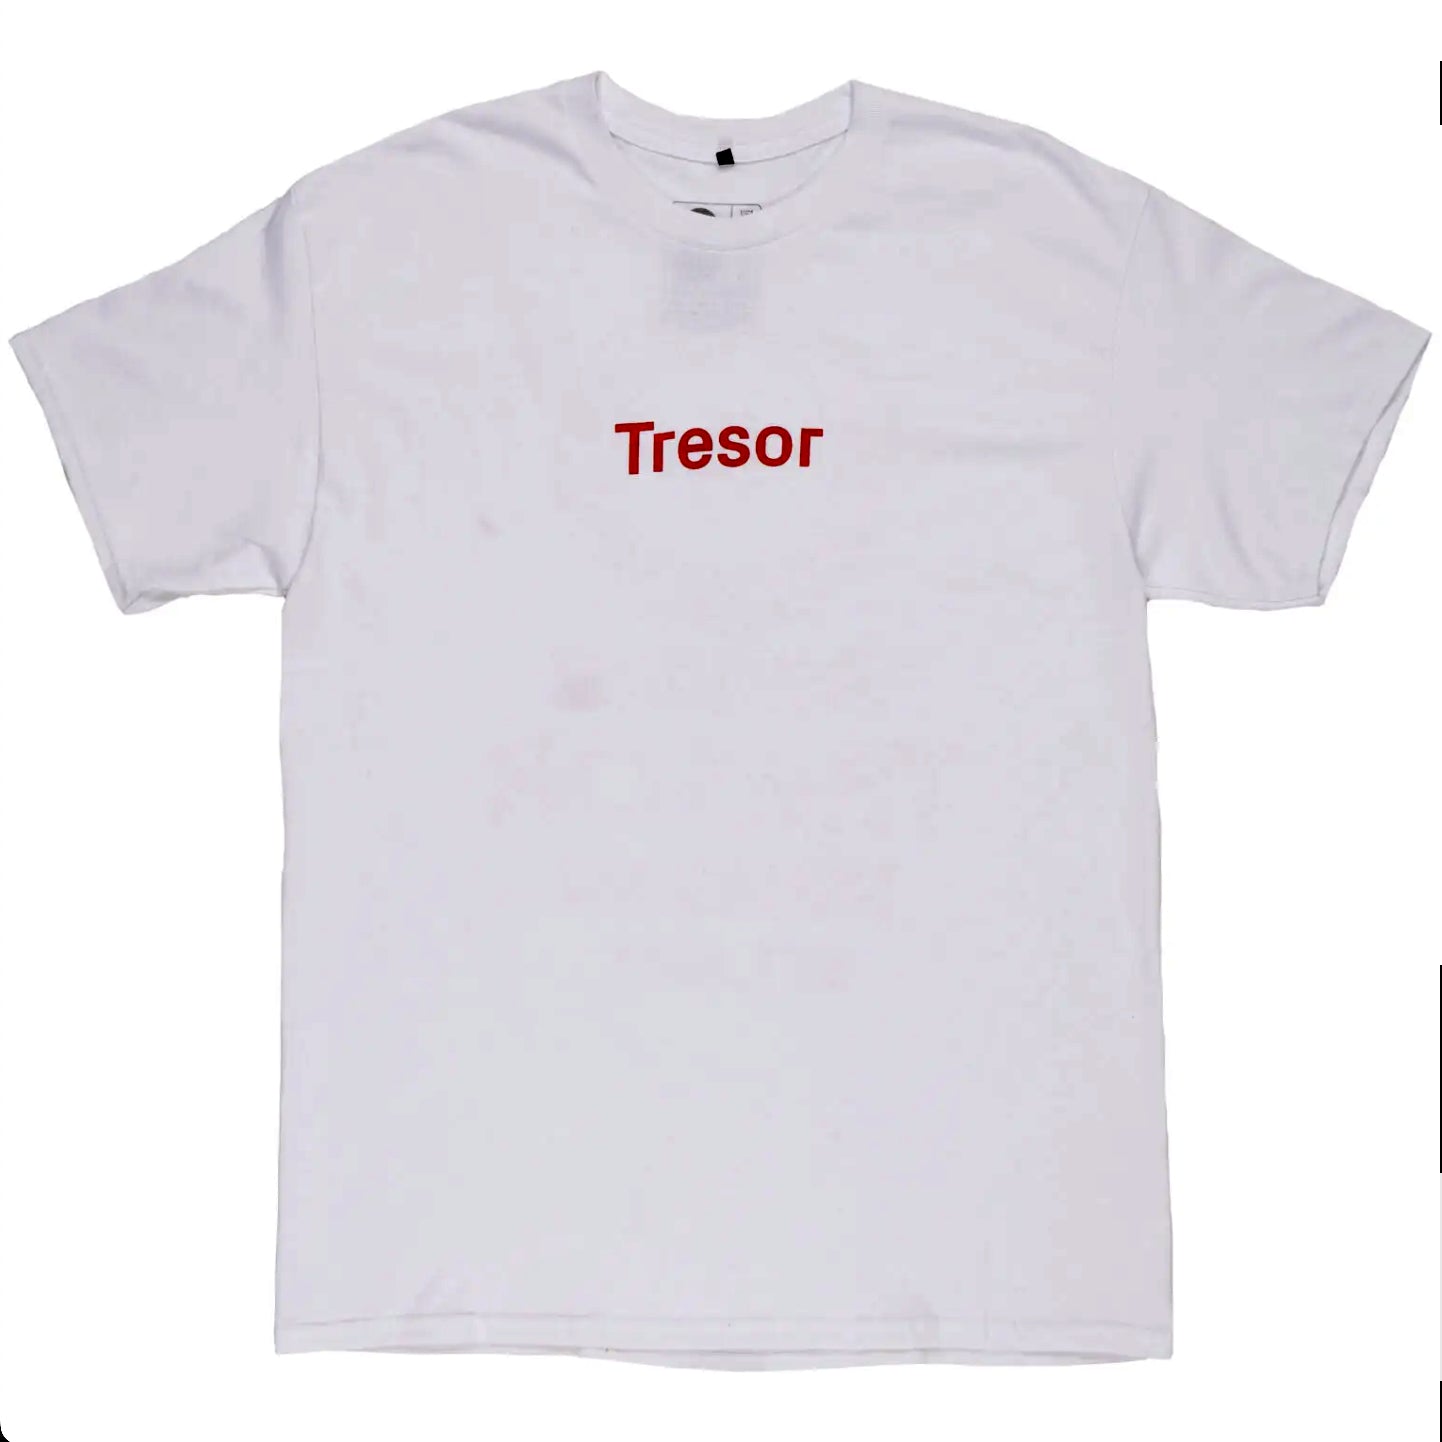 Tresor Classic T-Shirt (White + Red)